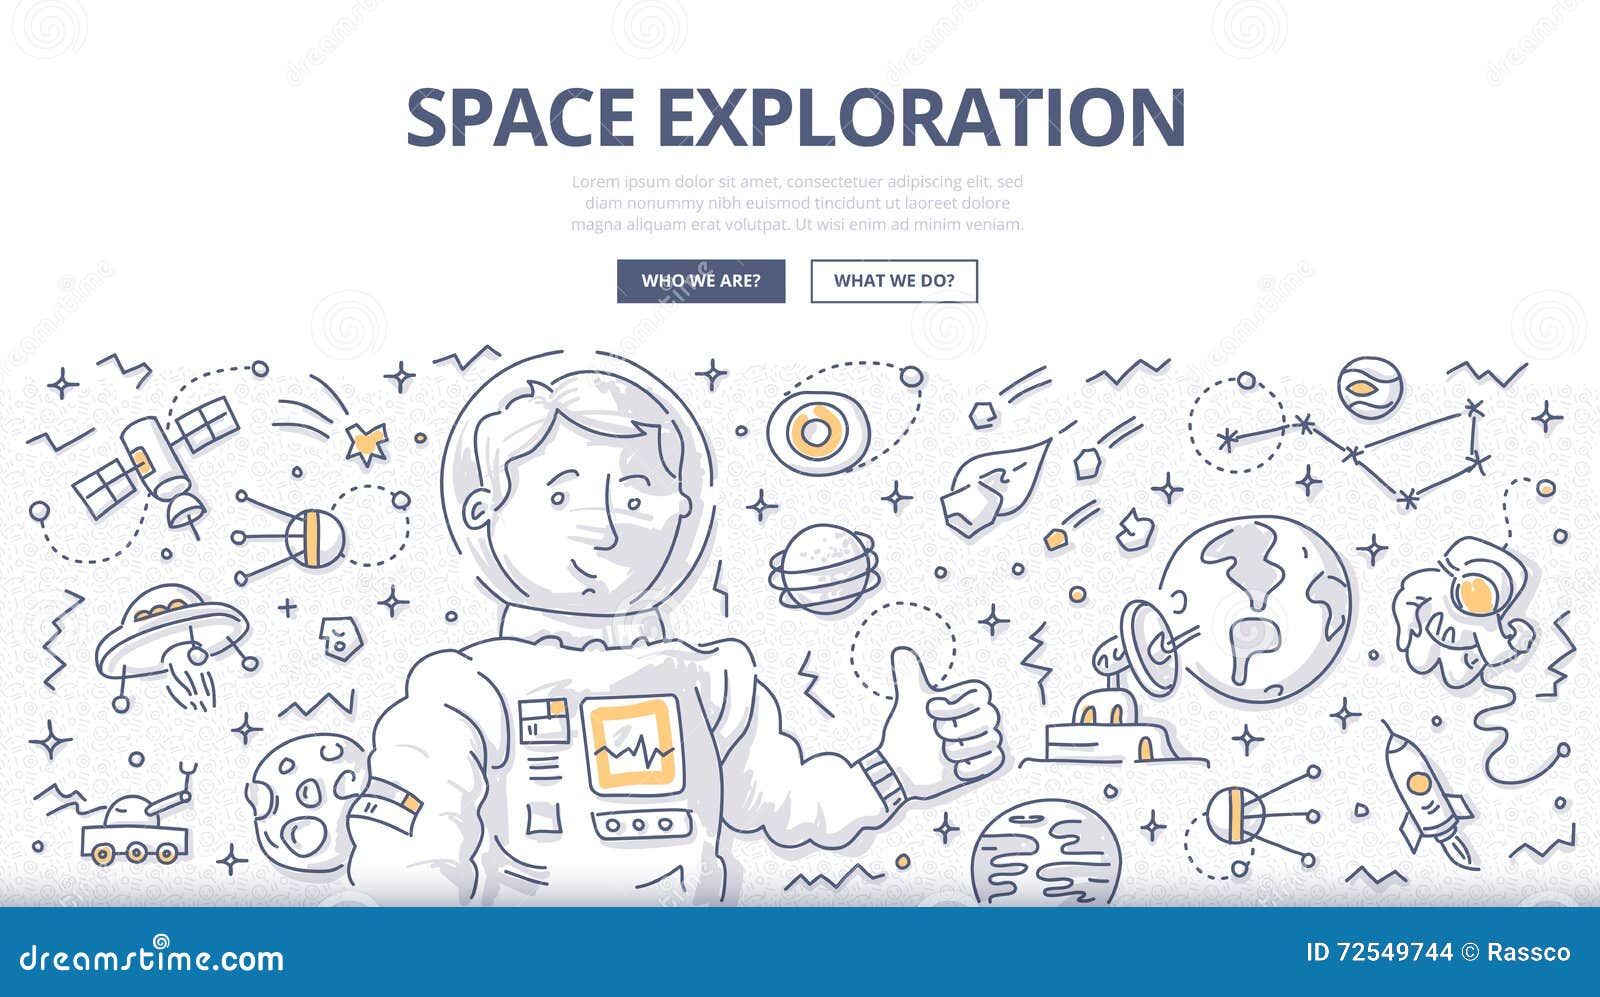 space exploration doodle concept